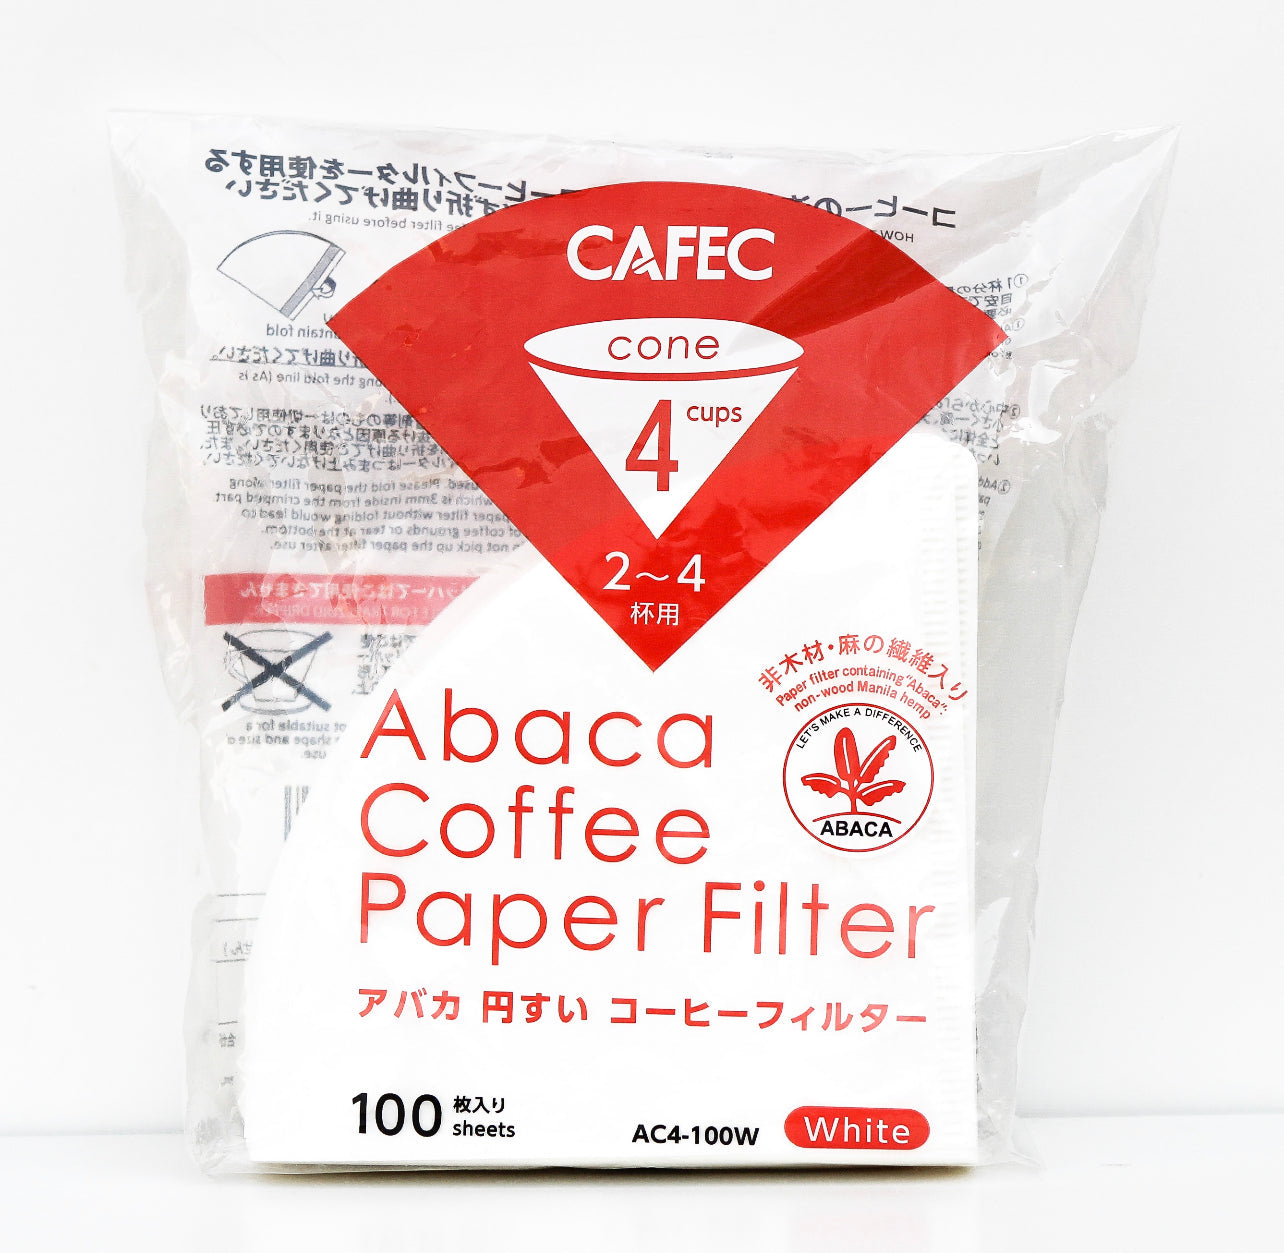 CAFEC Abaca Filter - Cup 4 Almahacoffee